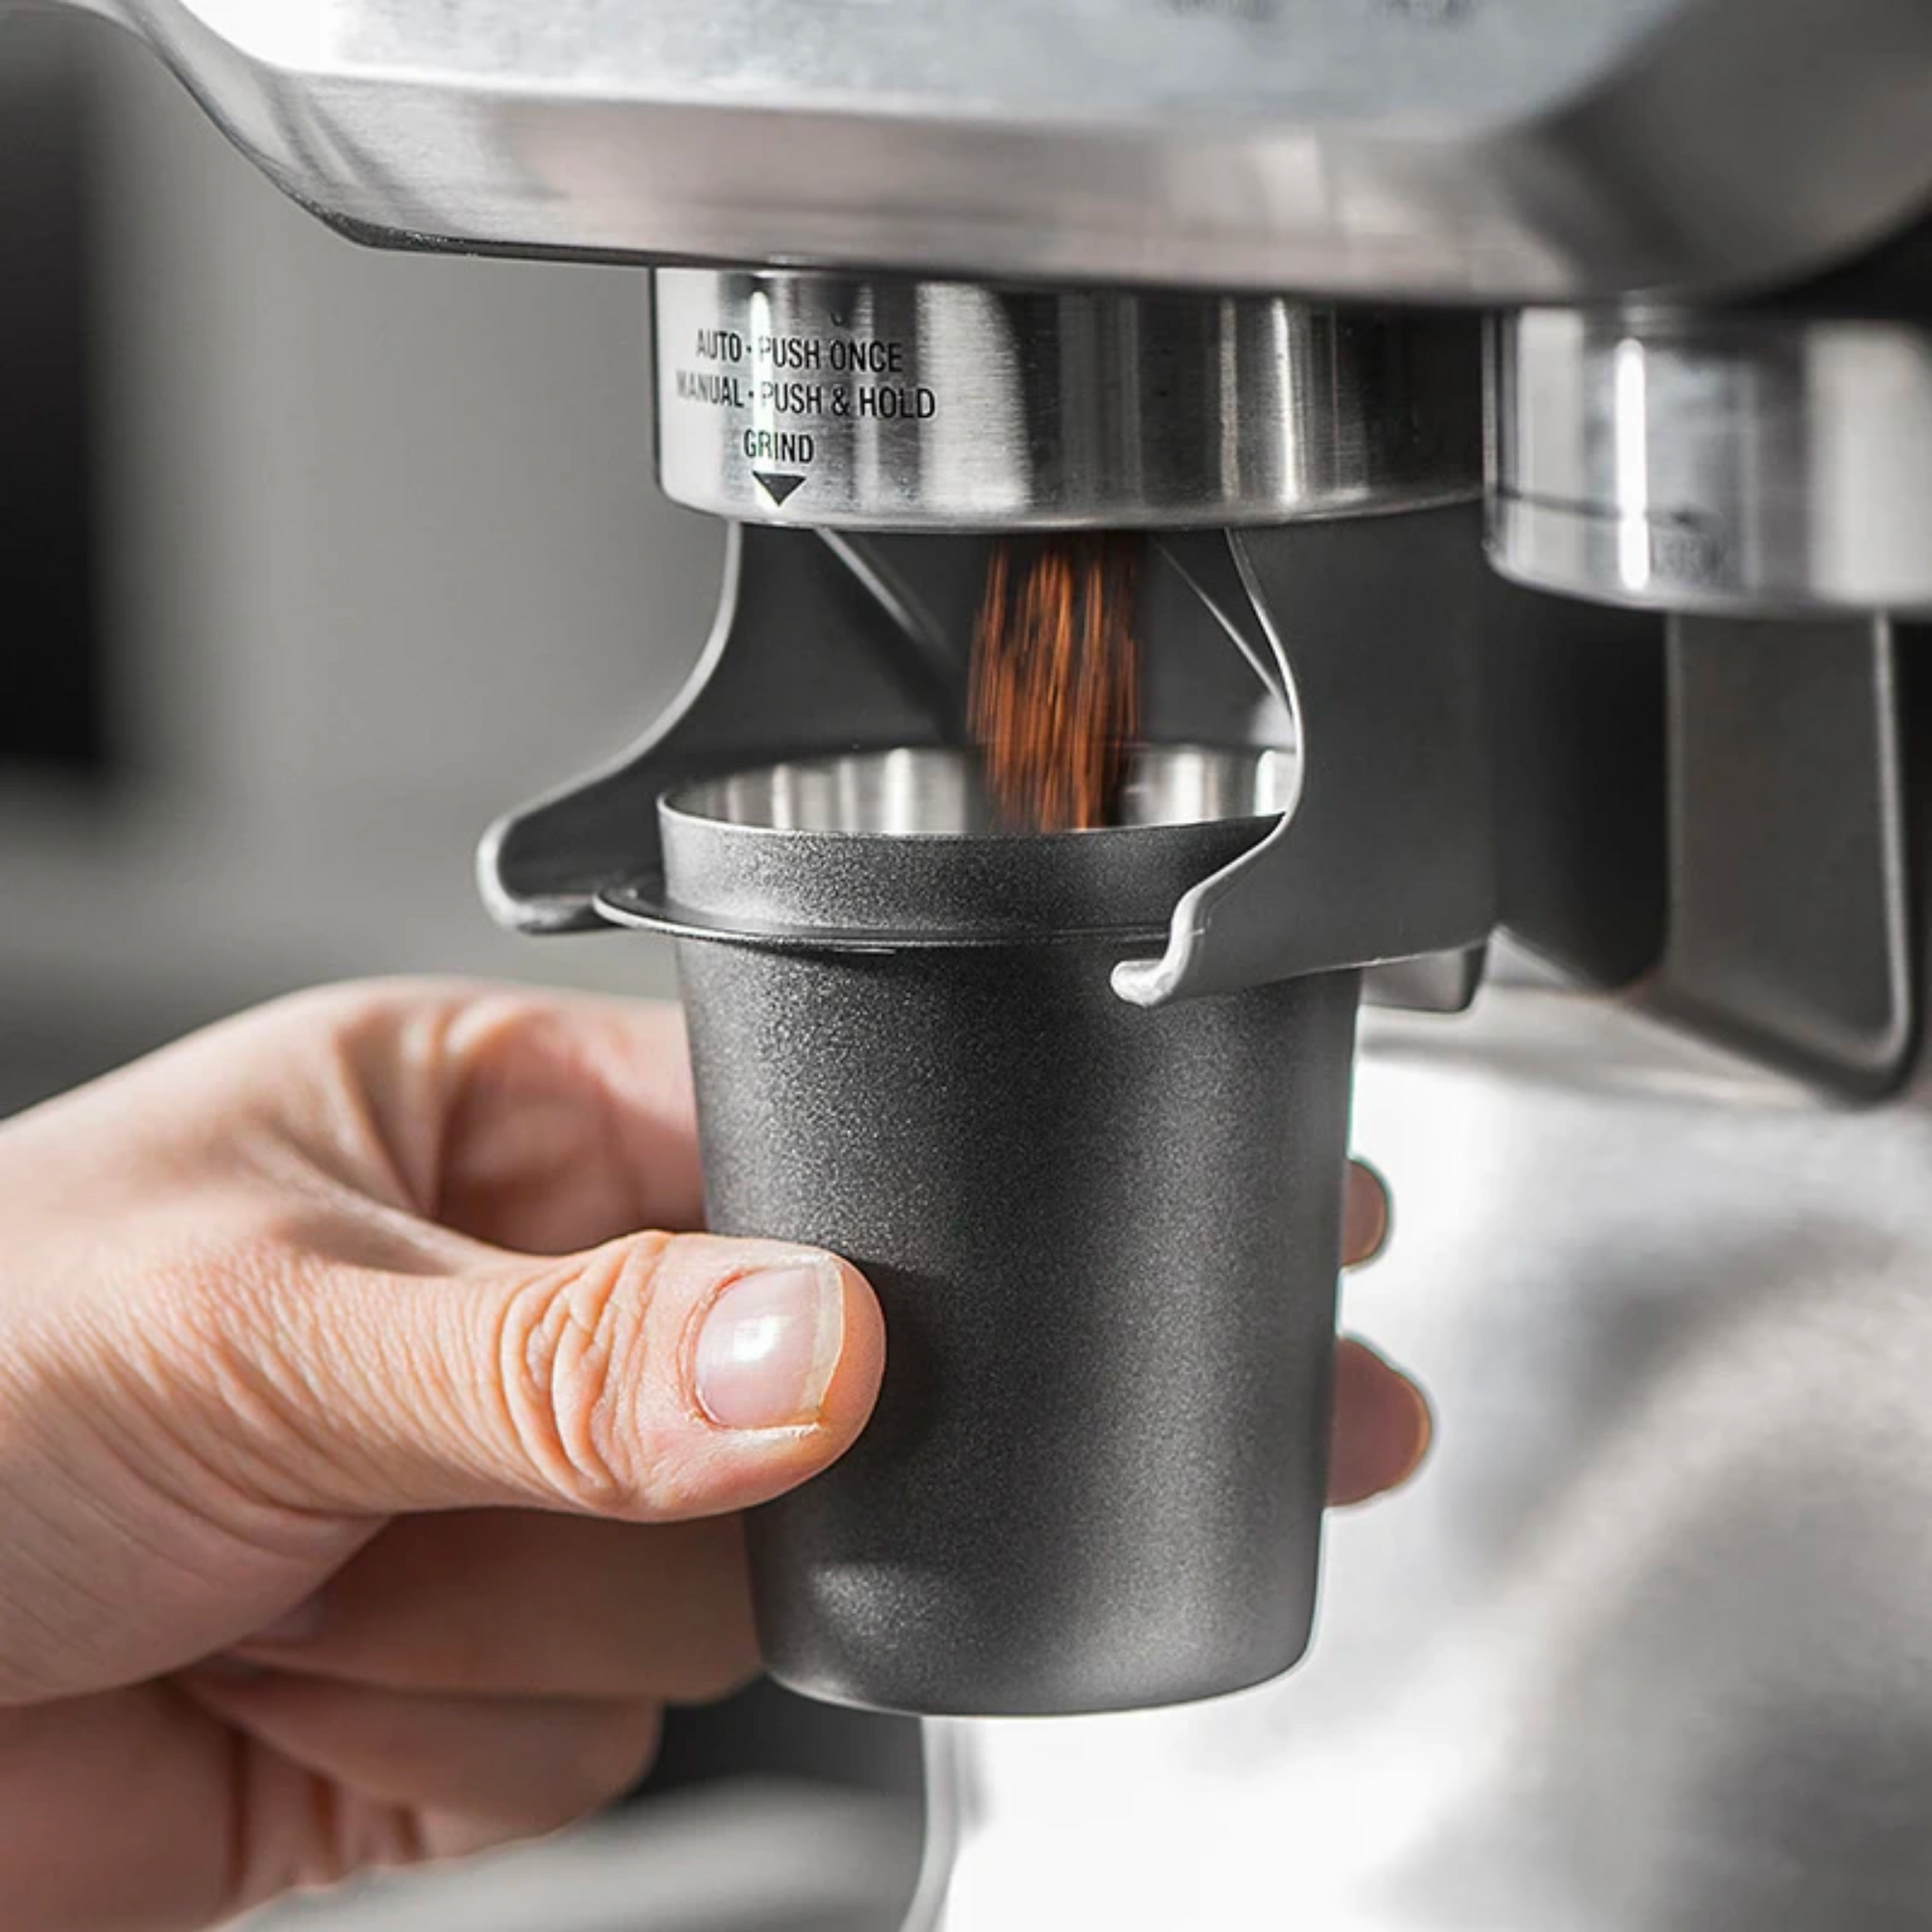  Cafecito Espresso Coffee Dosing Funnel, Dosing Funnel for  Cafecito Moka Pot, 304 Stainless Steel